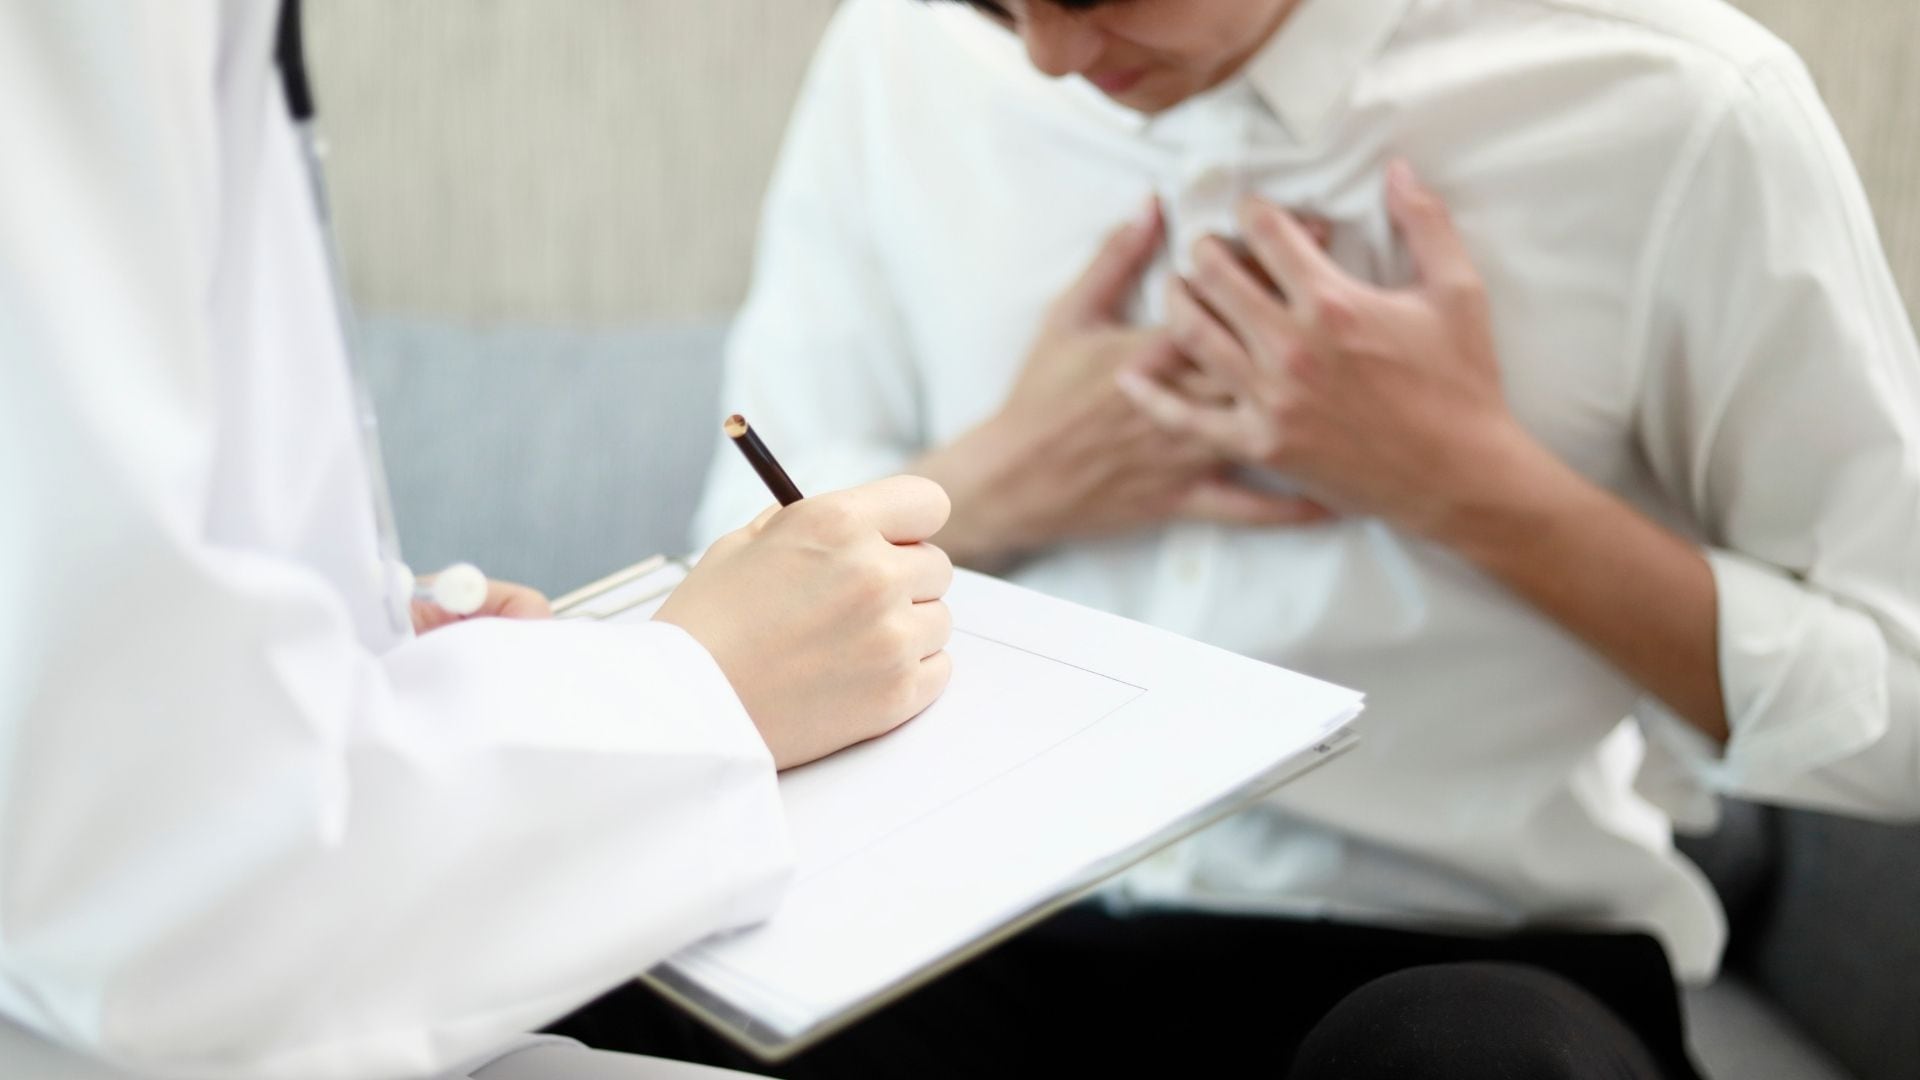 Síntomas como latidos irregulares, desmayos y falta de aire pueden indicar enfermedades en las válvulas cardíacas
Getty